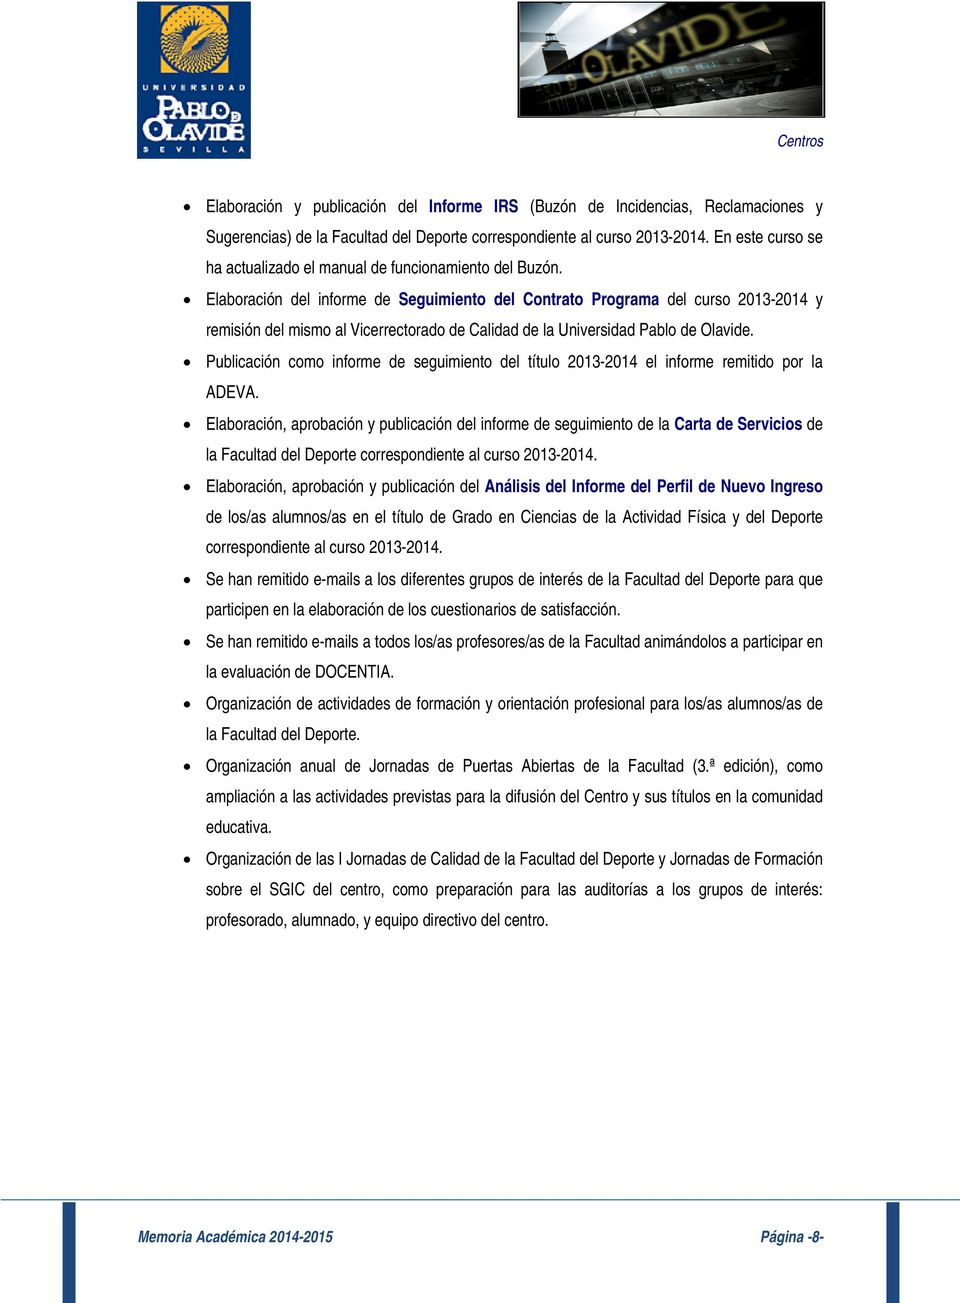 Elaboración del informe de Seguimiento del Contrato Programa del curso 2013-2014 y remisión del mismo al Vicerrectorado de Calidad de la Universidad Pablo de Olavide.